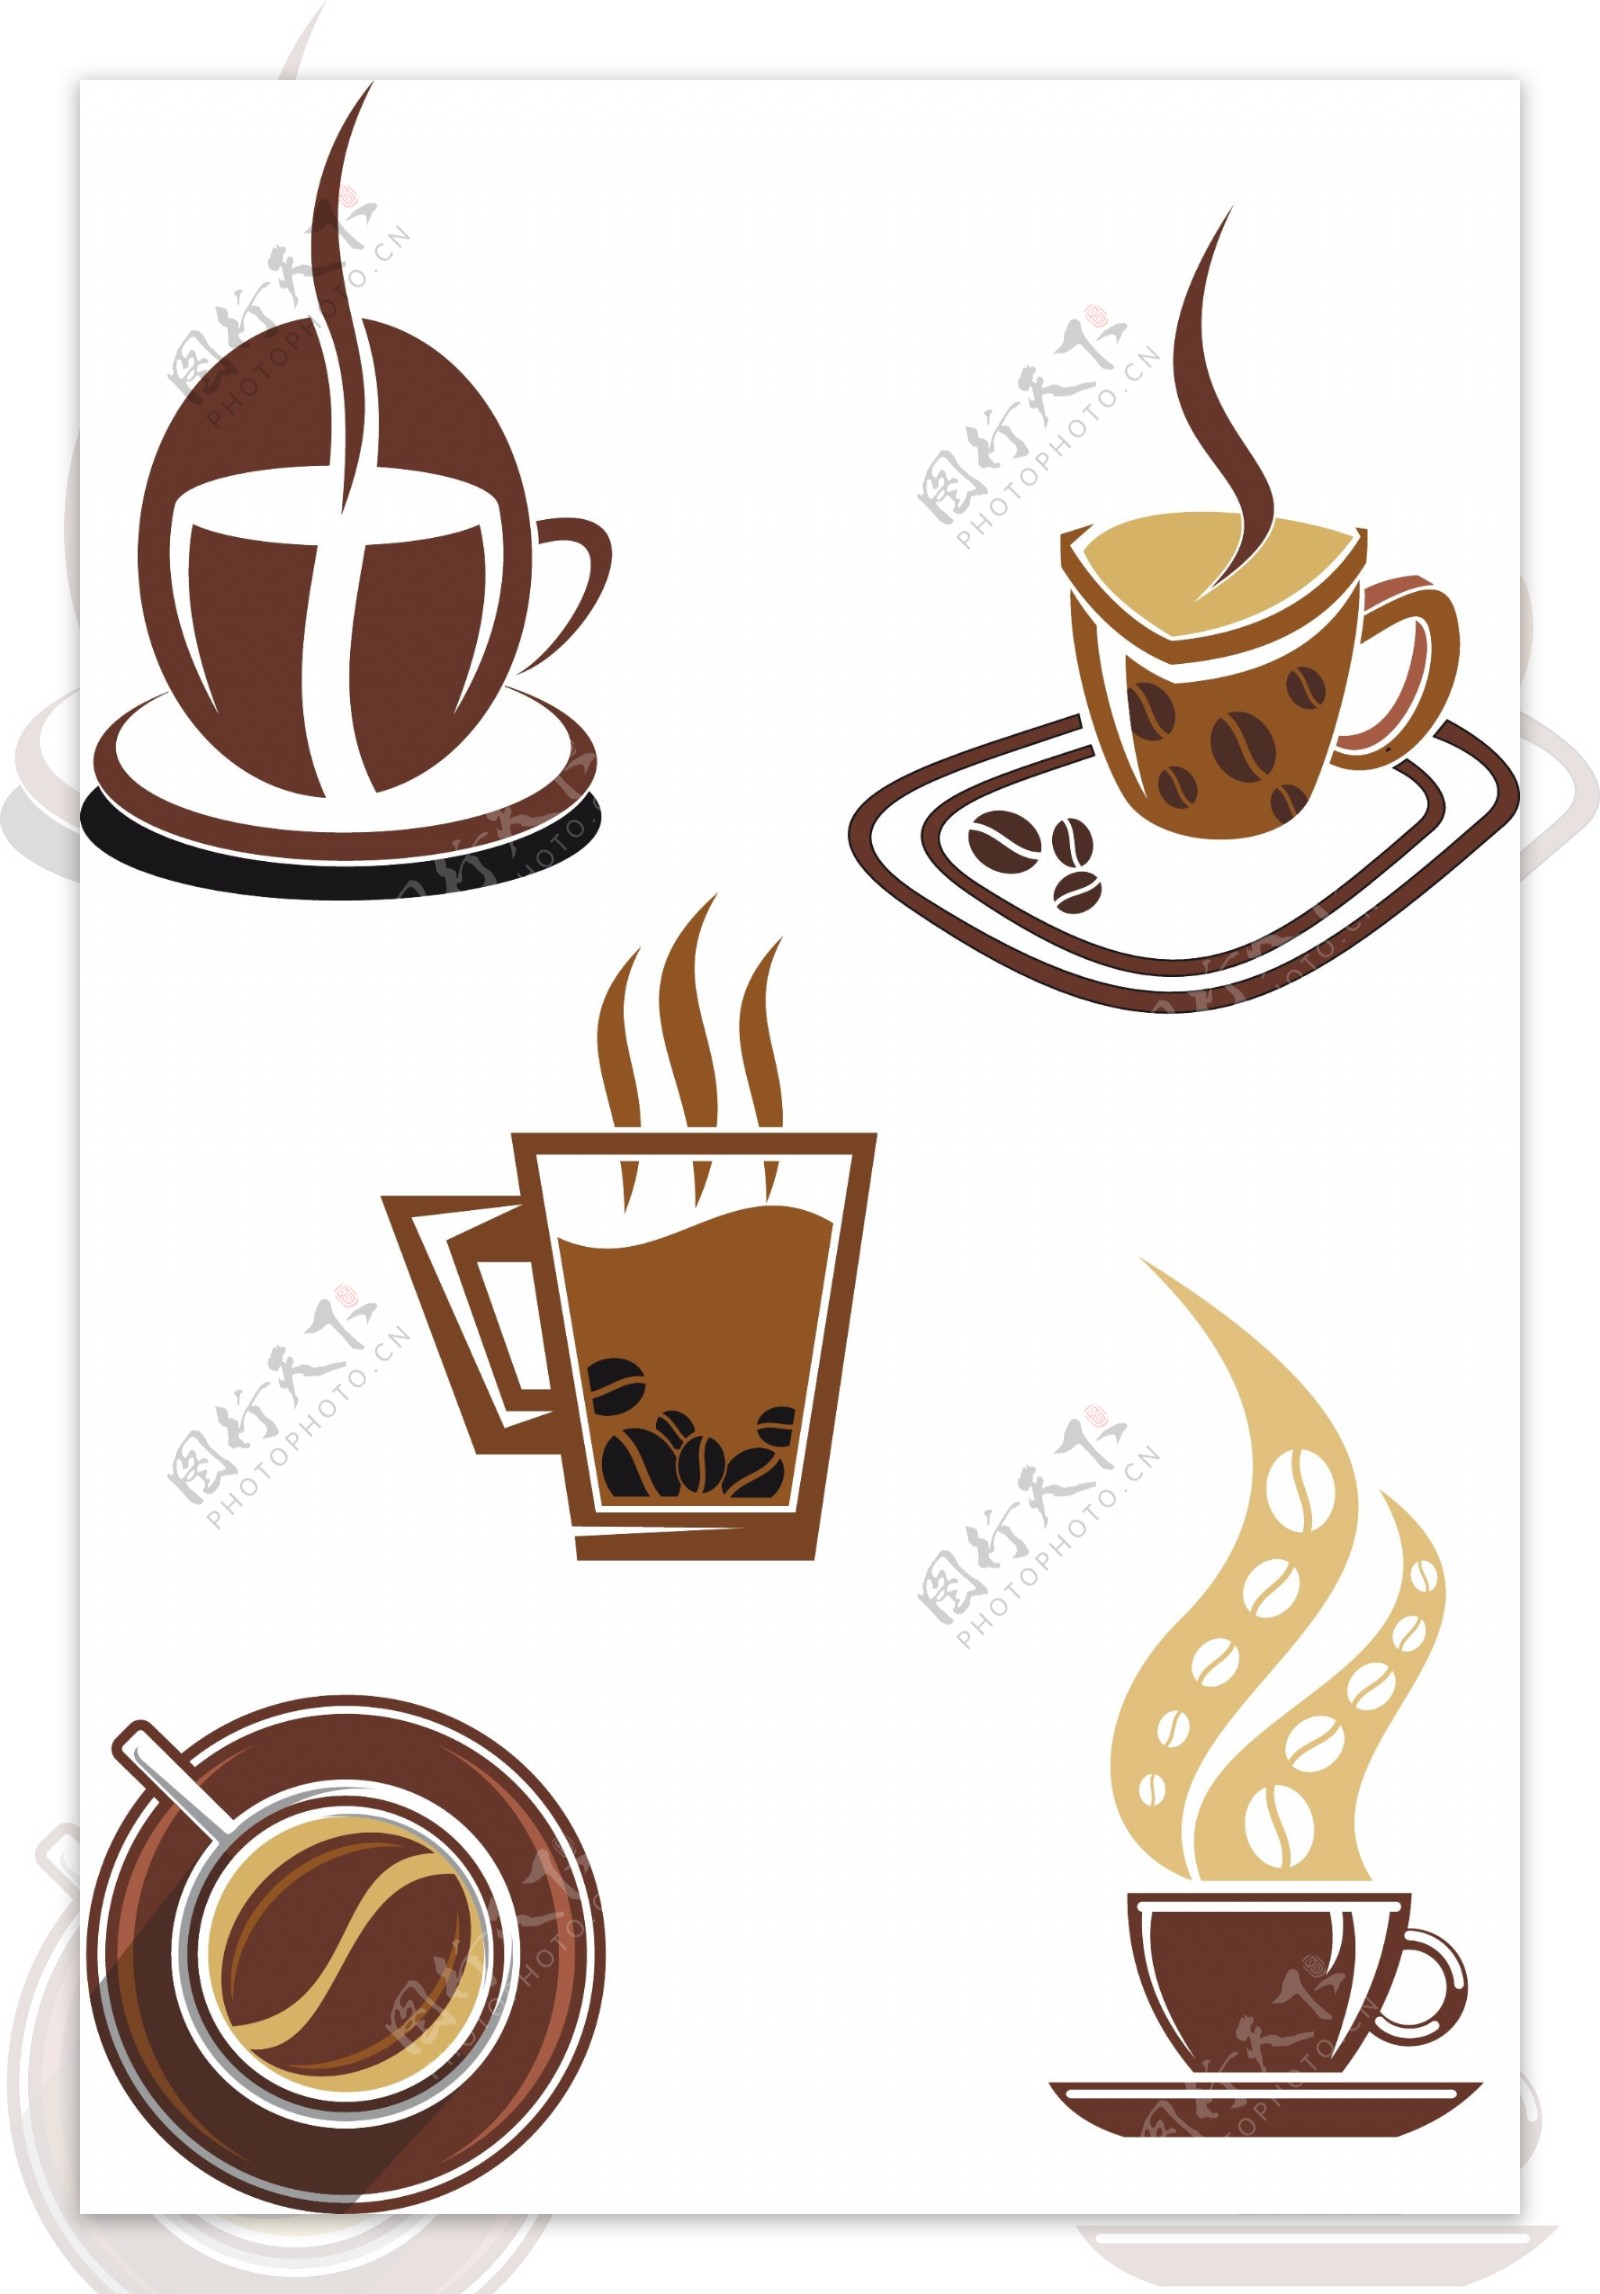 咖啡集合图标设计矢量